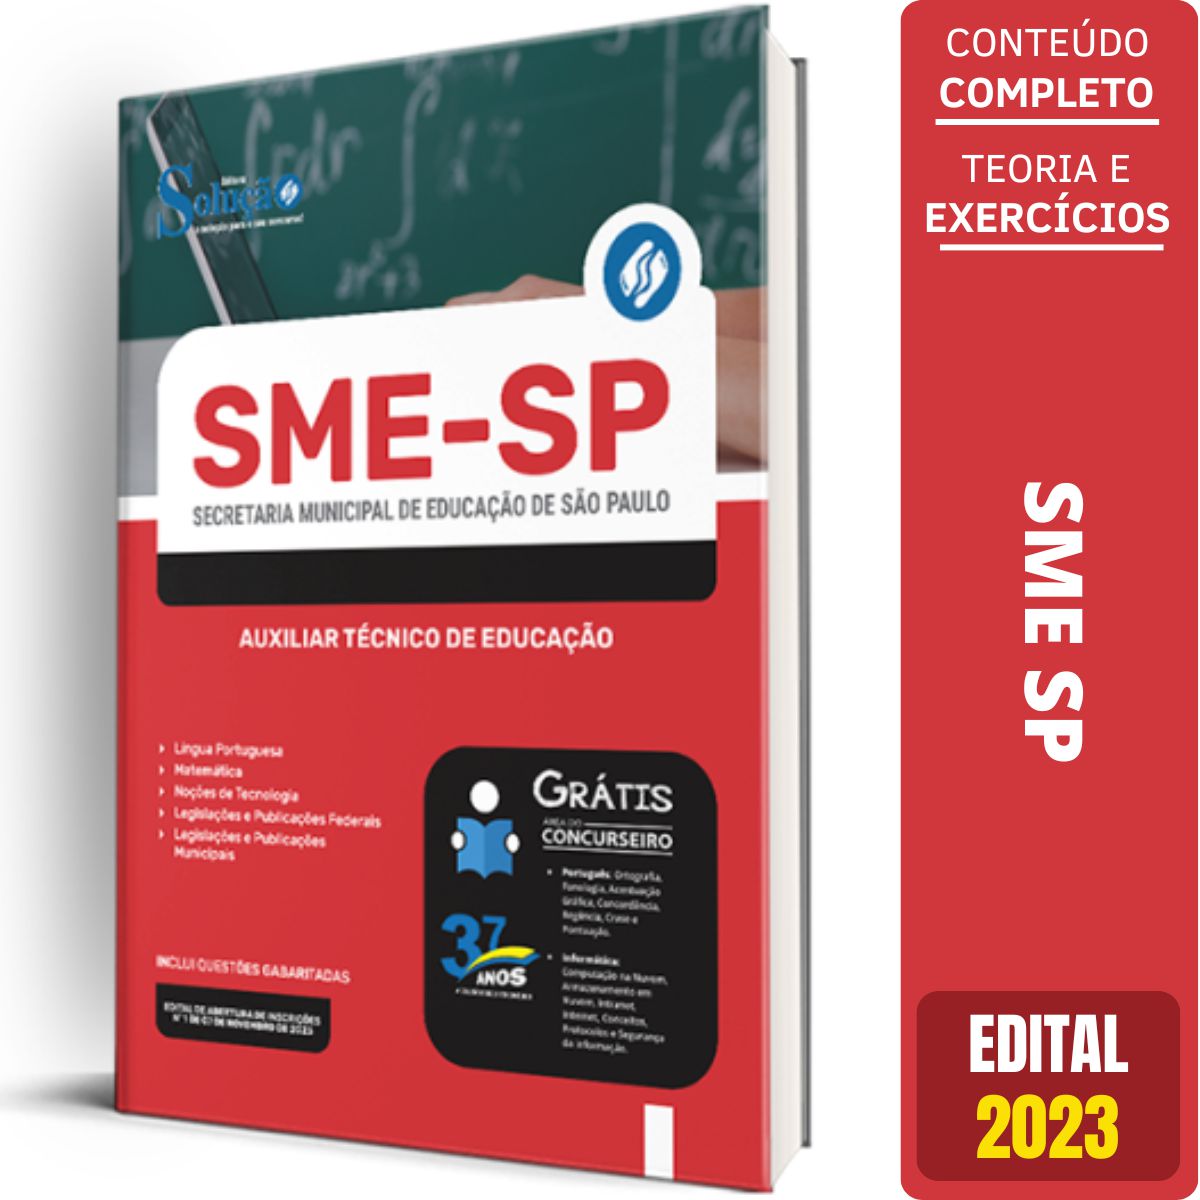 SME - SP divulga inscrições para Contratação de Auxiliar Técnico